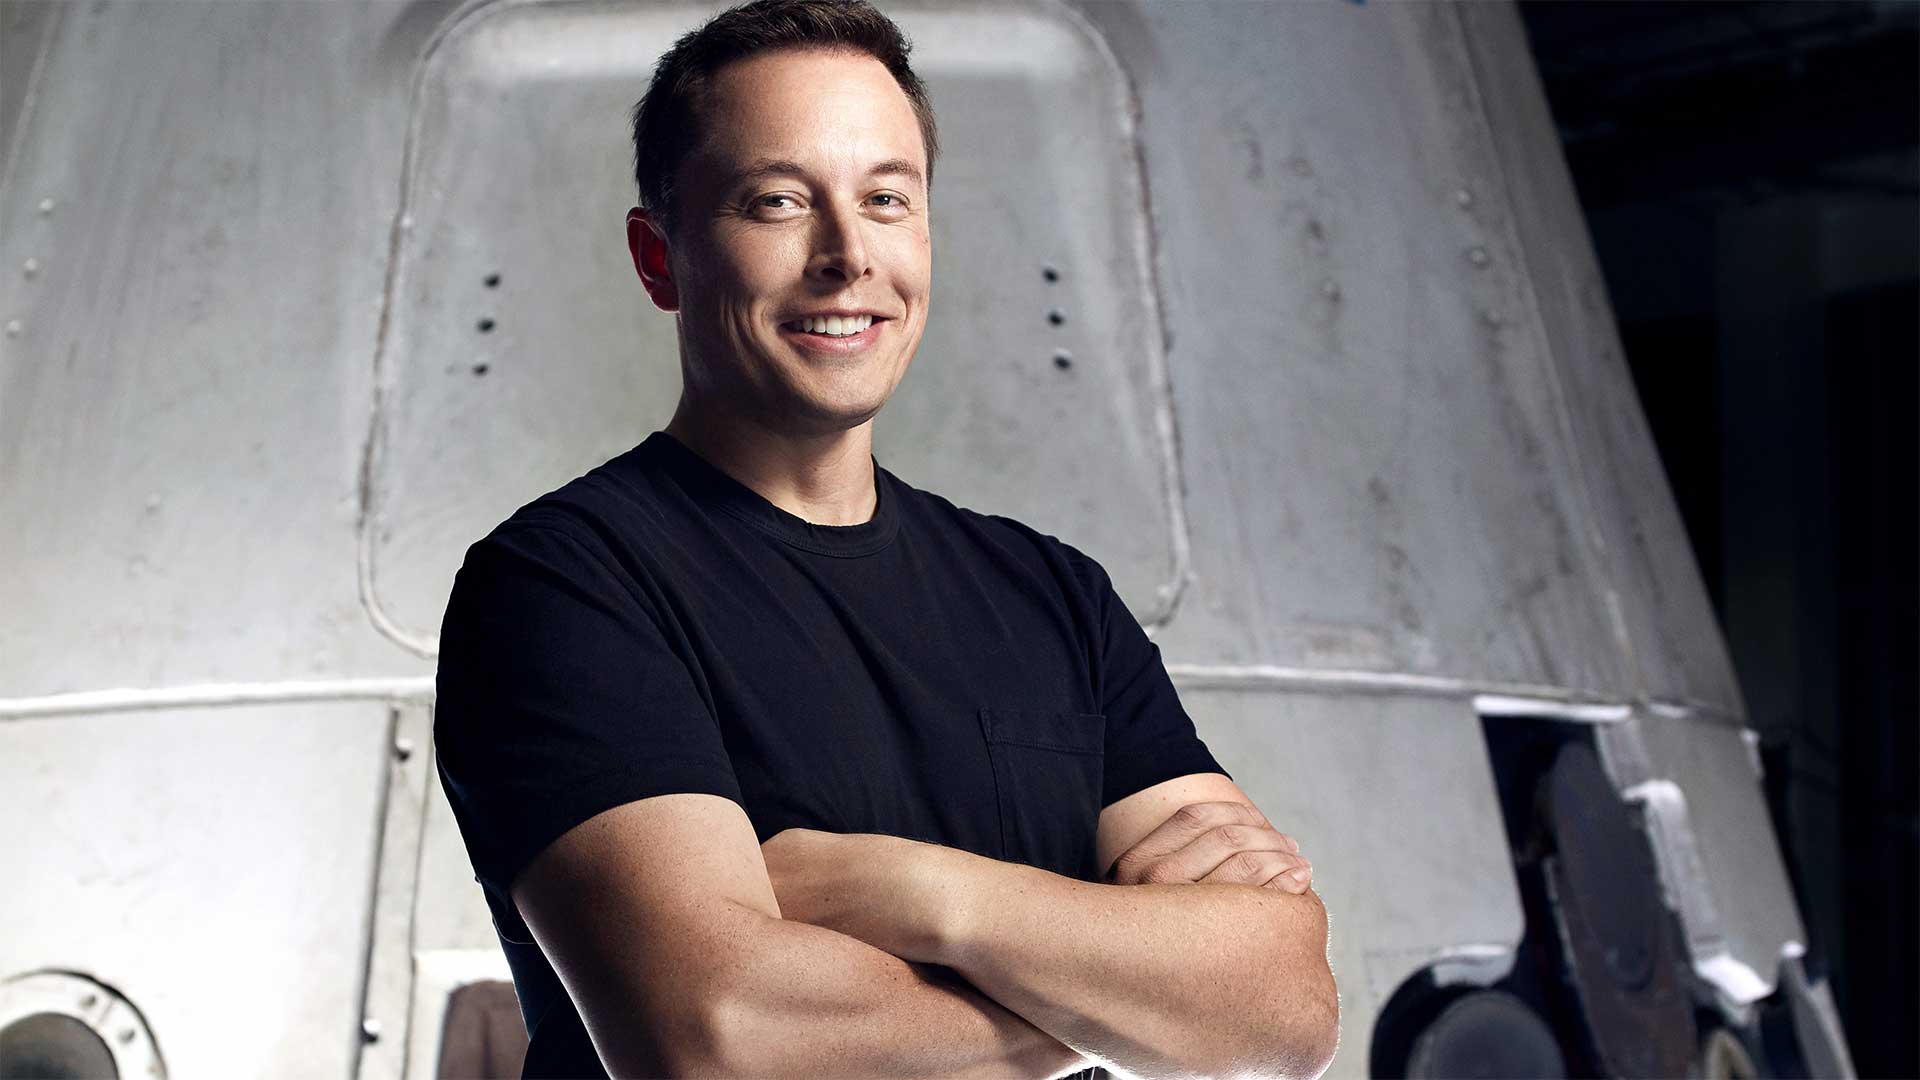 Elon Musk (man) smiling at camera